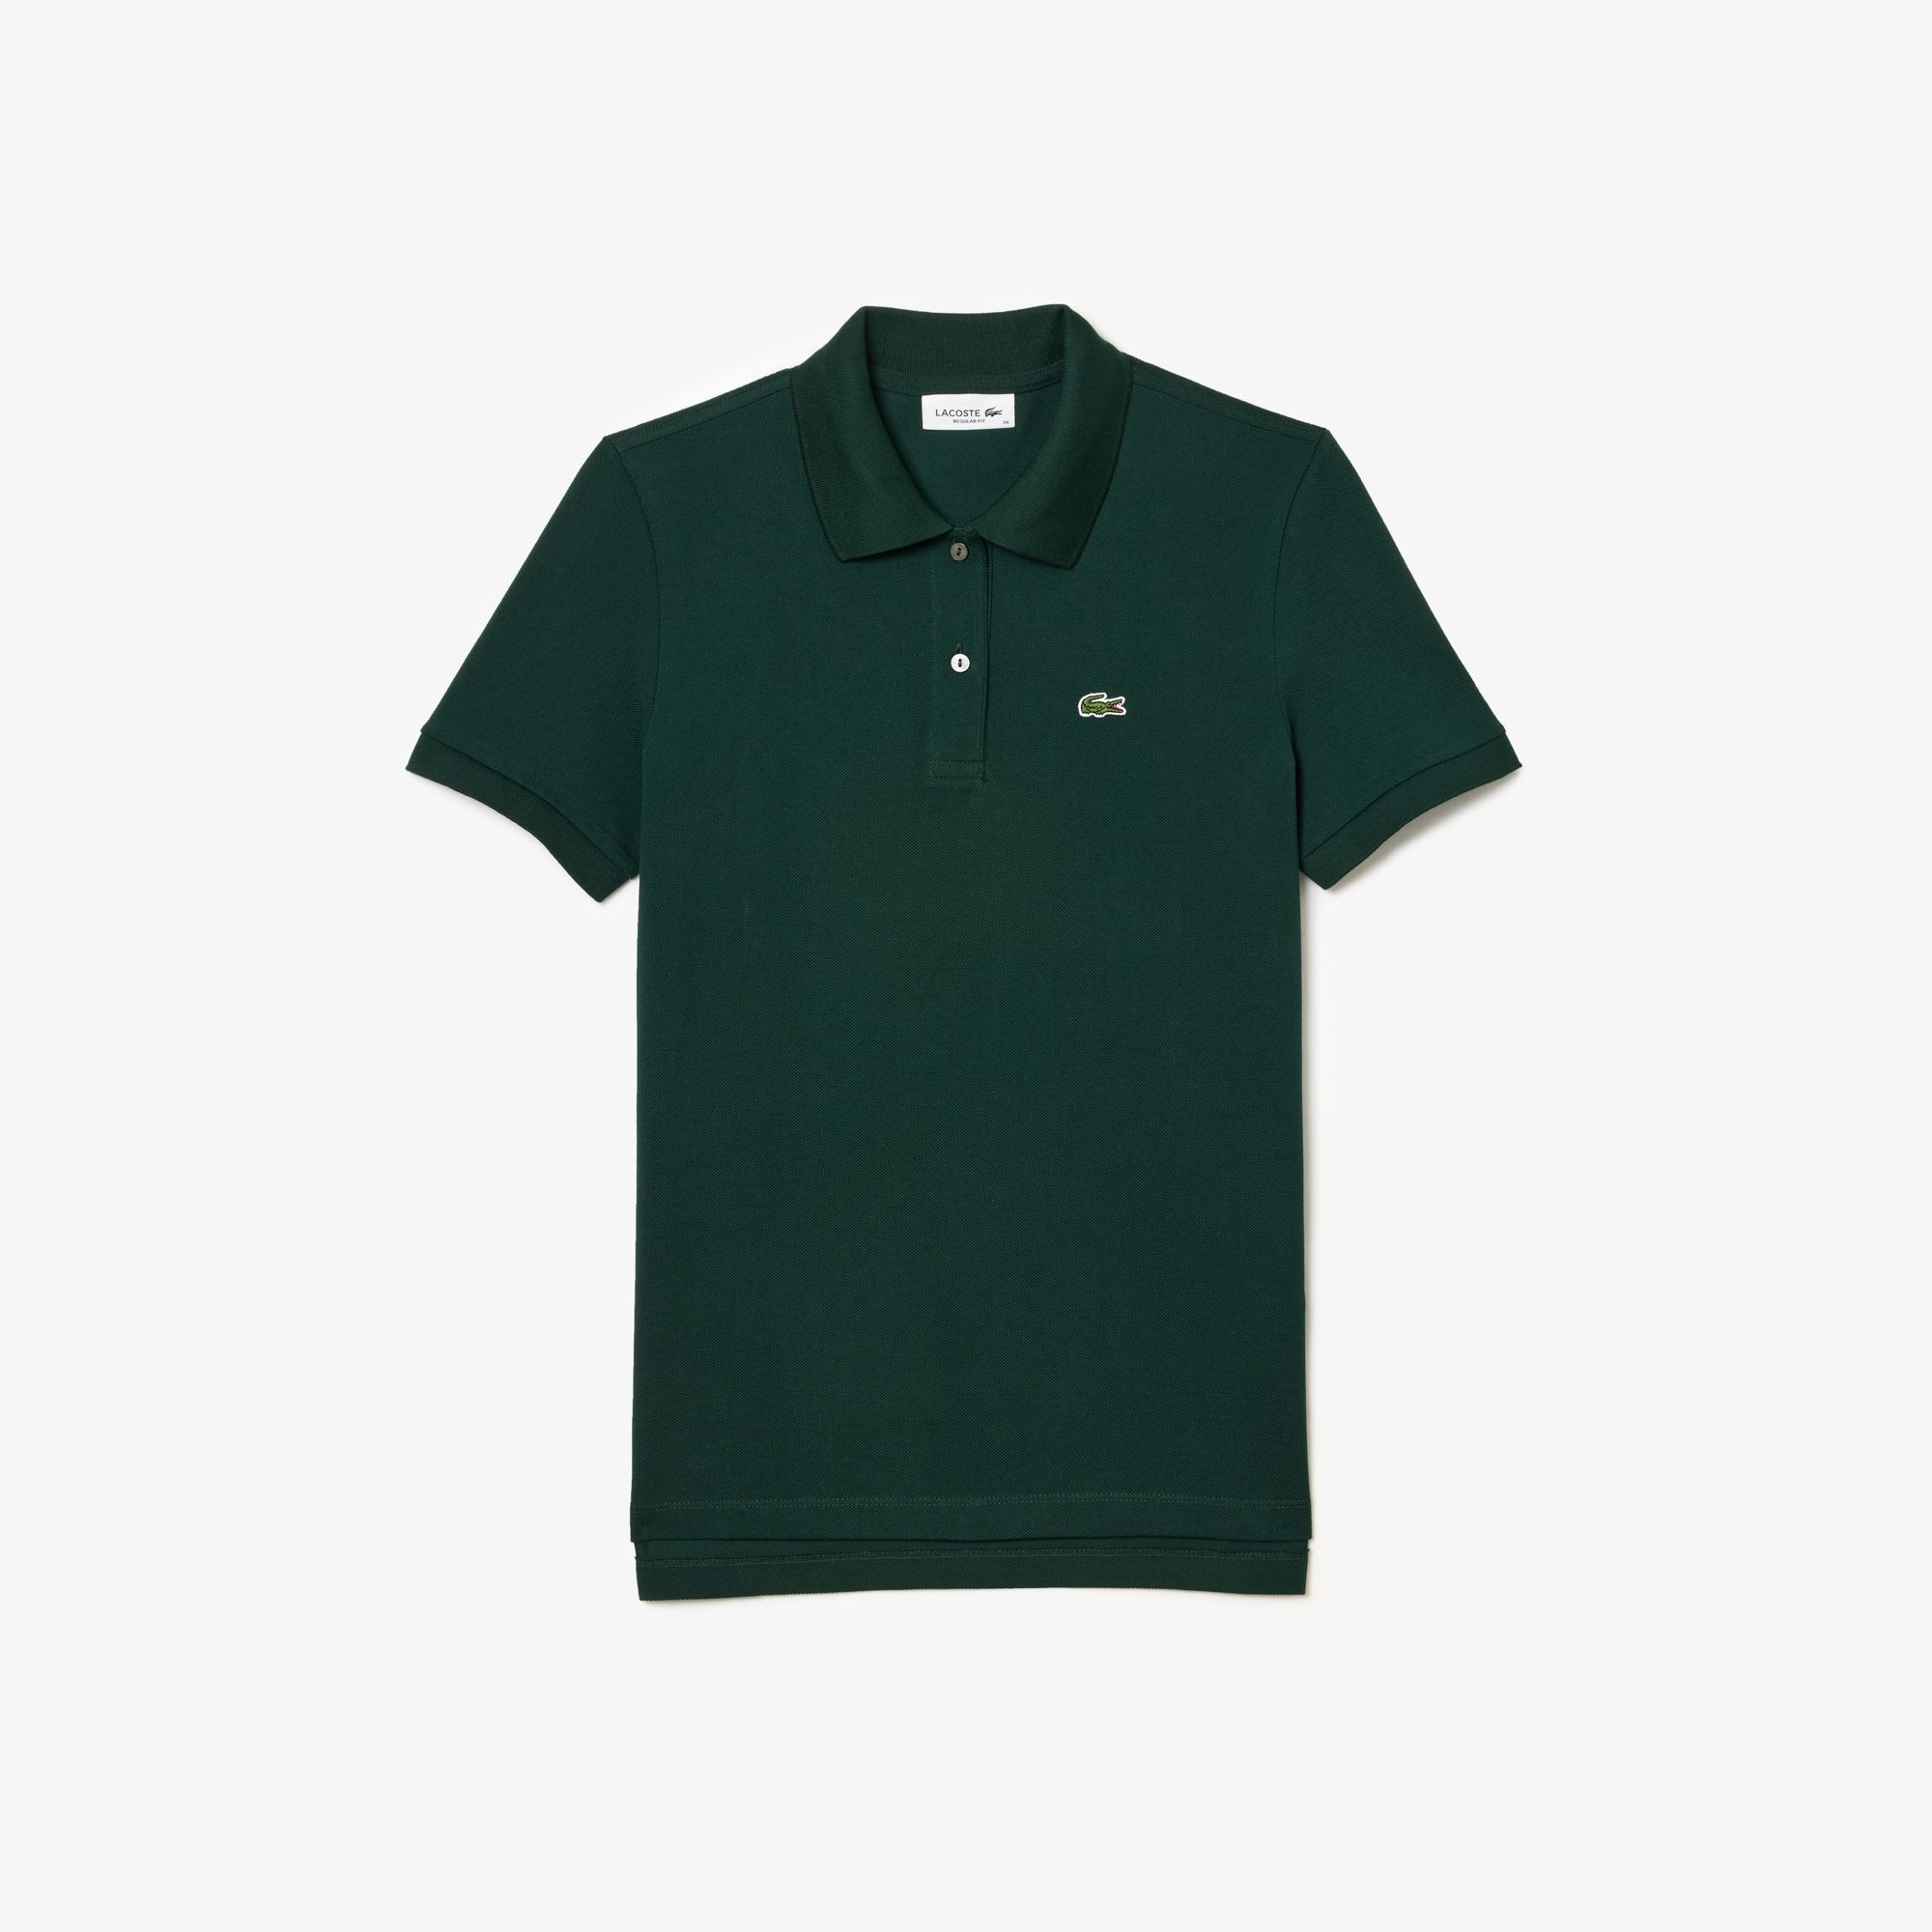  Lacoste Women's Regular Fit Soft Cotton Petit Piqué Polo Shirt - Forest Green 